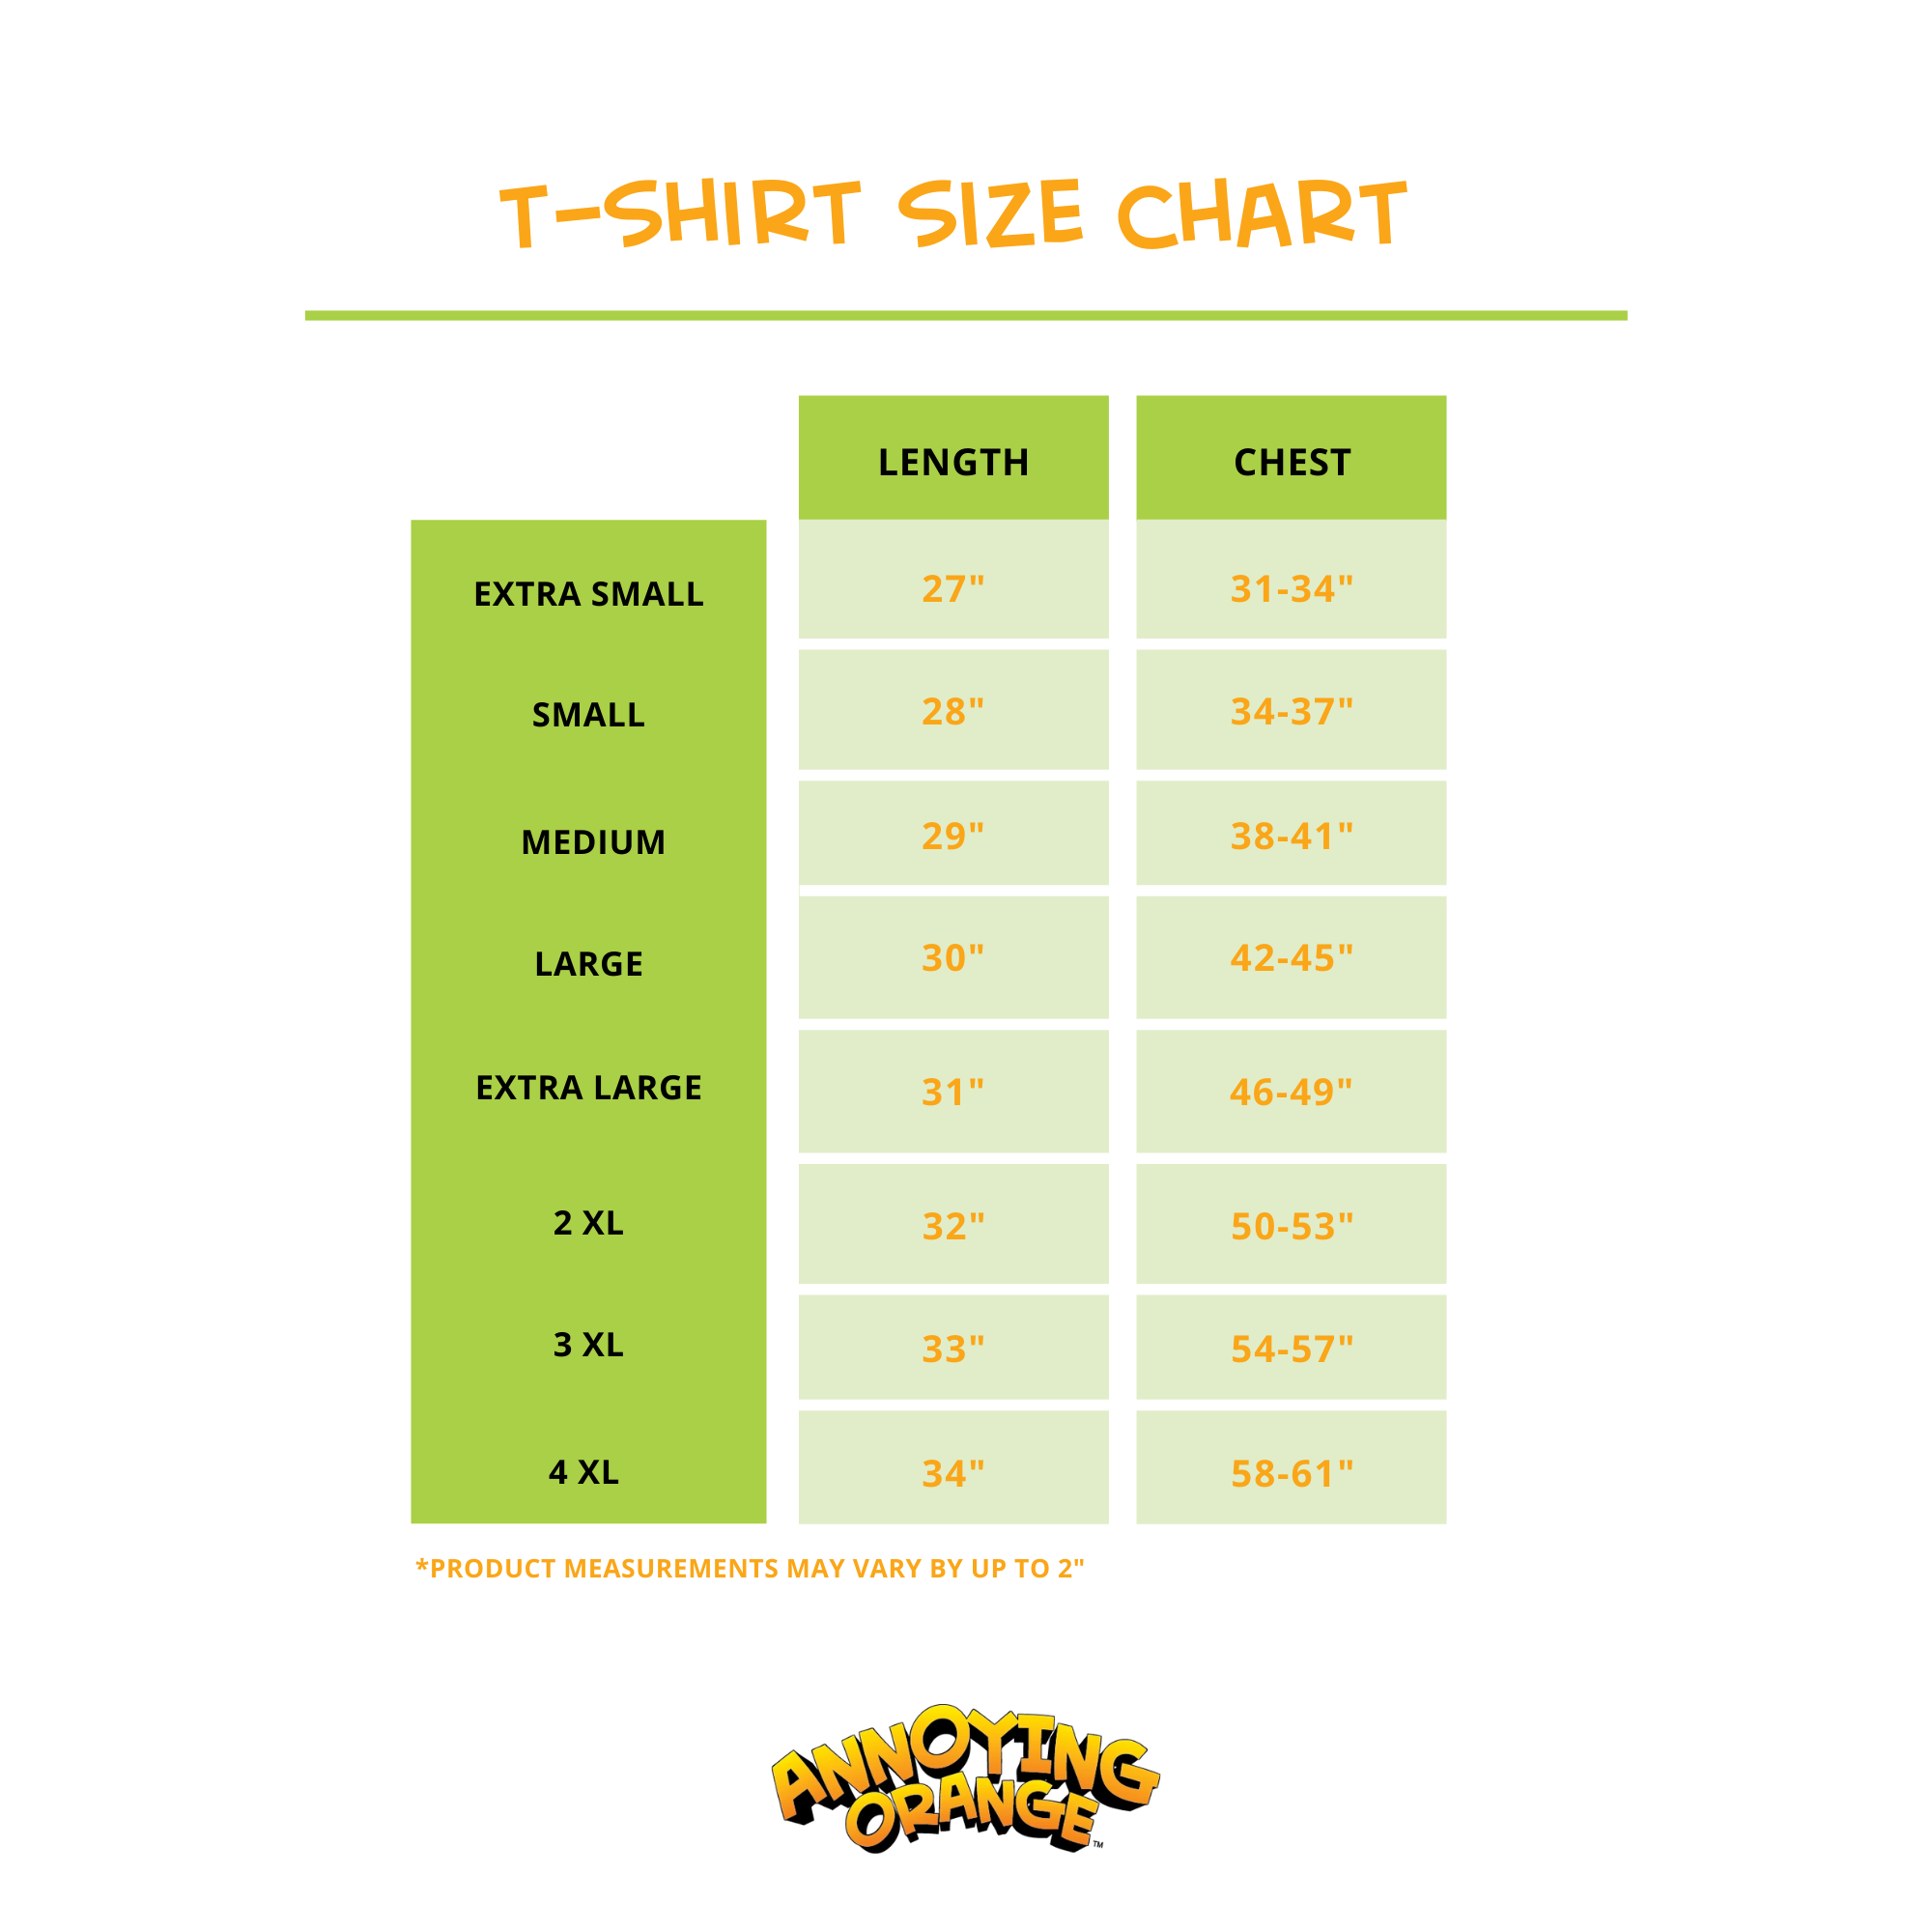 T-SHIRT size chart